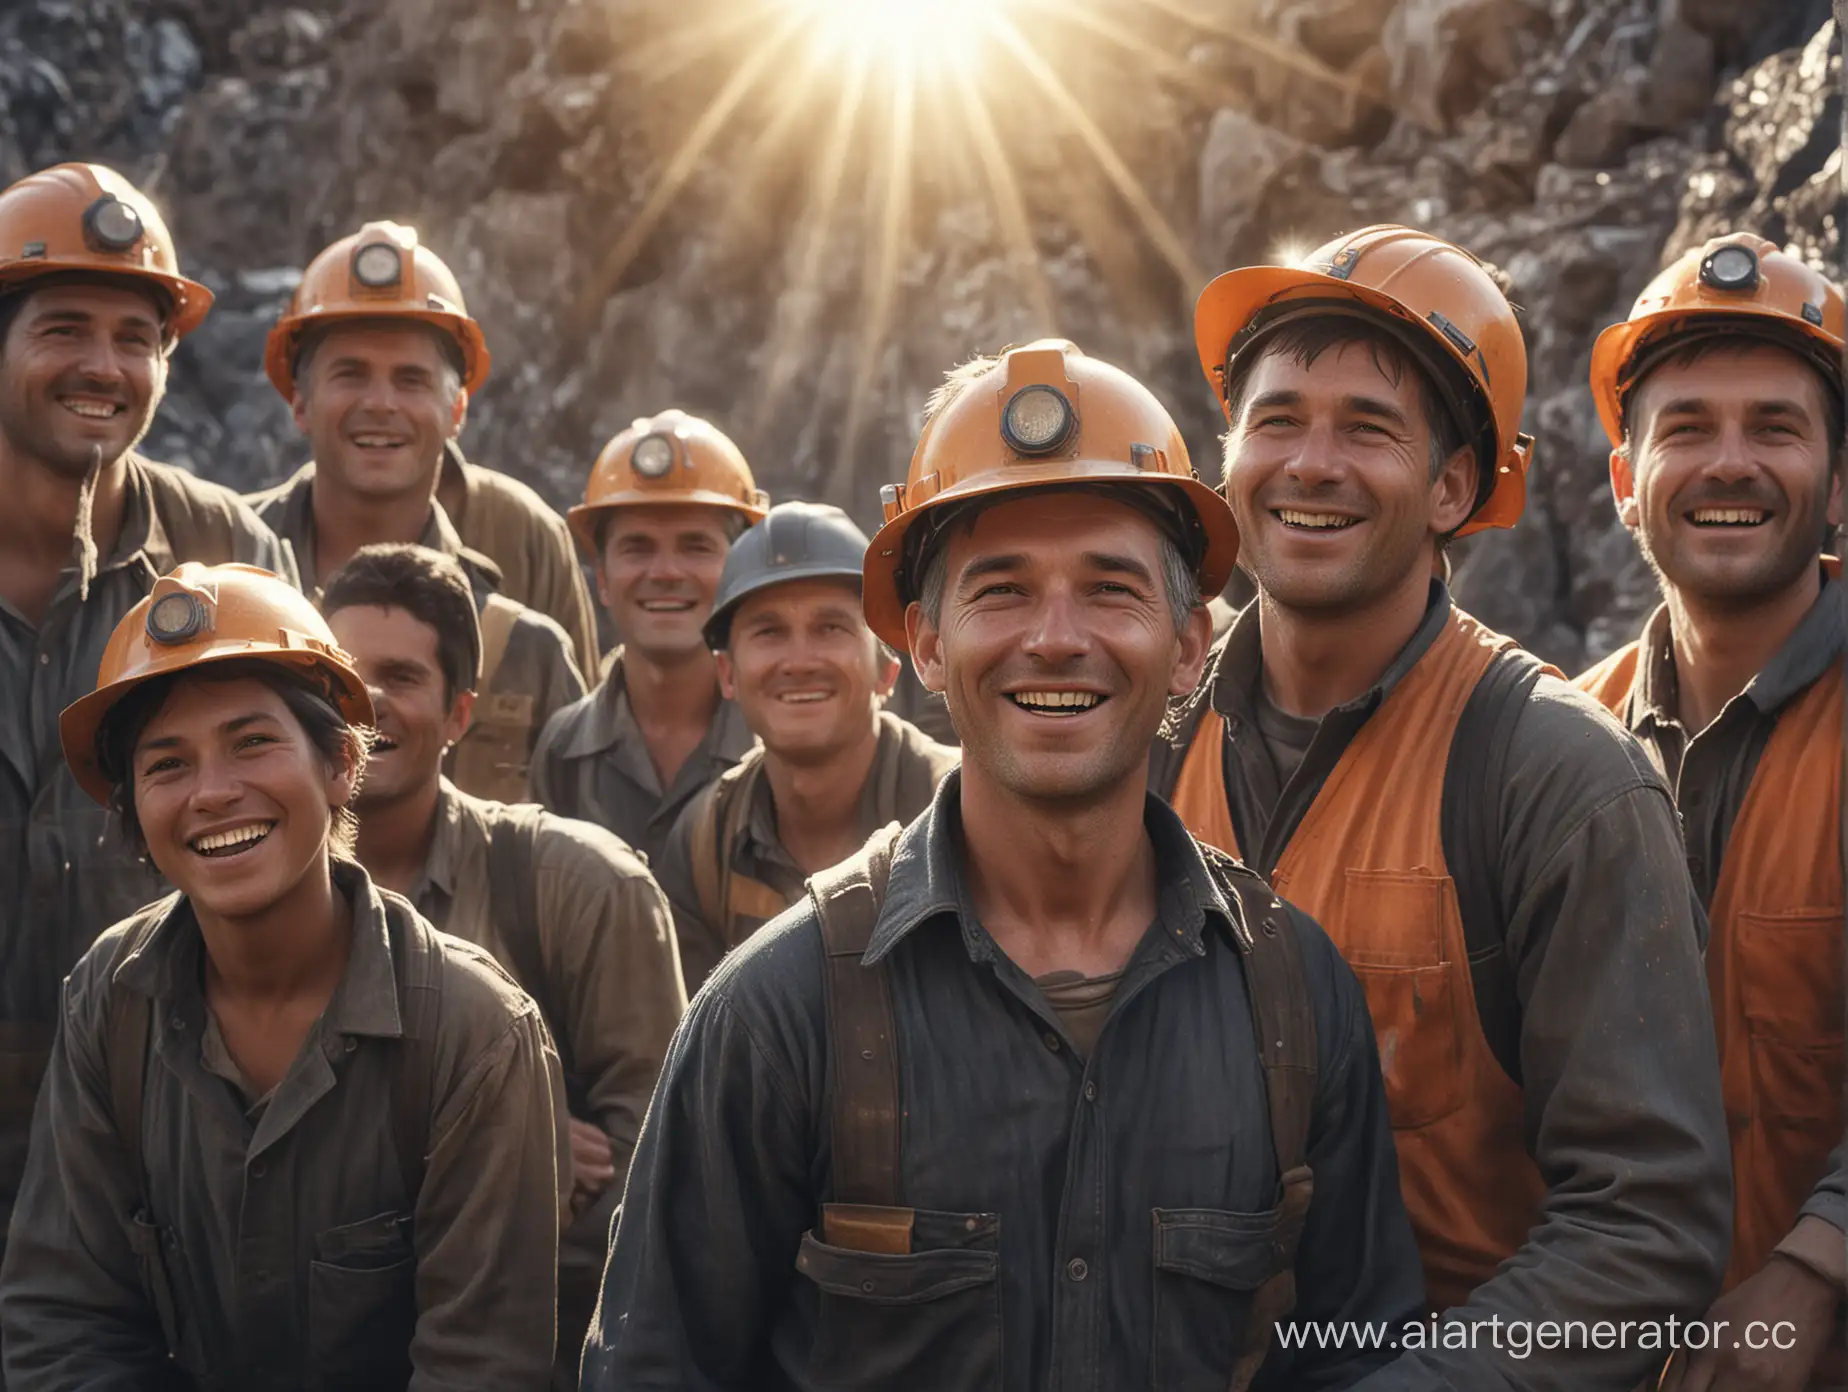 Сгенерируй реалистичное изображение, на котором изображены шахтёры на угольном разрезе. Шахтеры обучают новичков своему делу. Светит солнце, на разрезе весна. Все шахтеры улыбаются. Изображение должно быть в высоком разрешении.